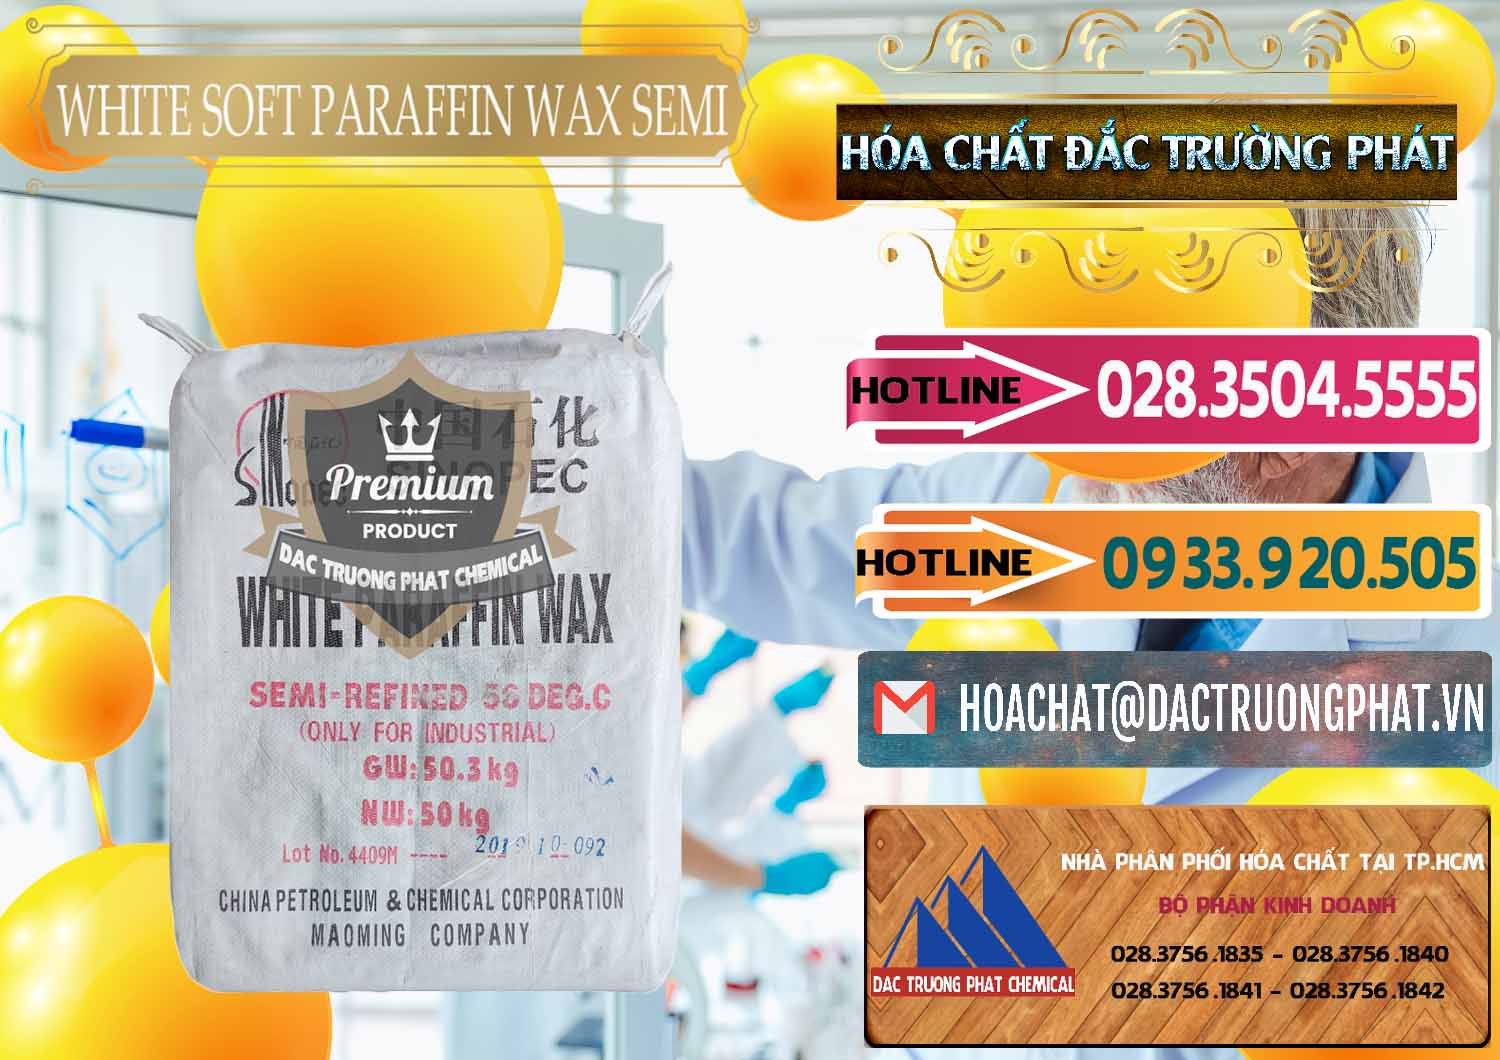 Cty bán & phân phối Sáp Paraffin Wax Sinopec Trung Quốc China - 0328 - Nơi chuyên phân phối - bán hóa chất tại TP.HCM - dactruongphat.vn